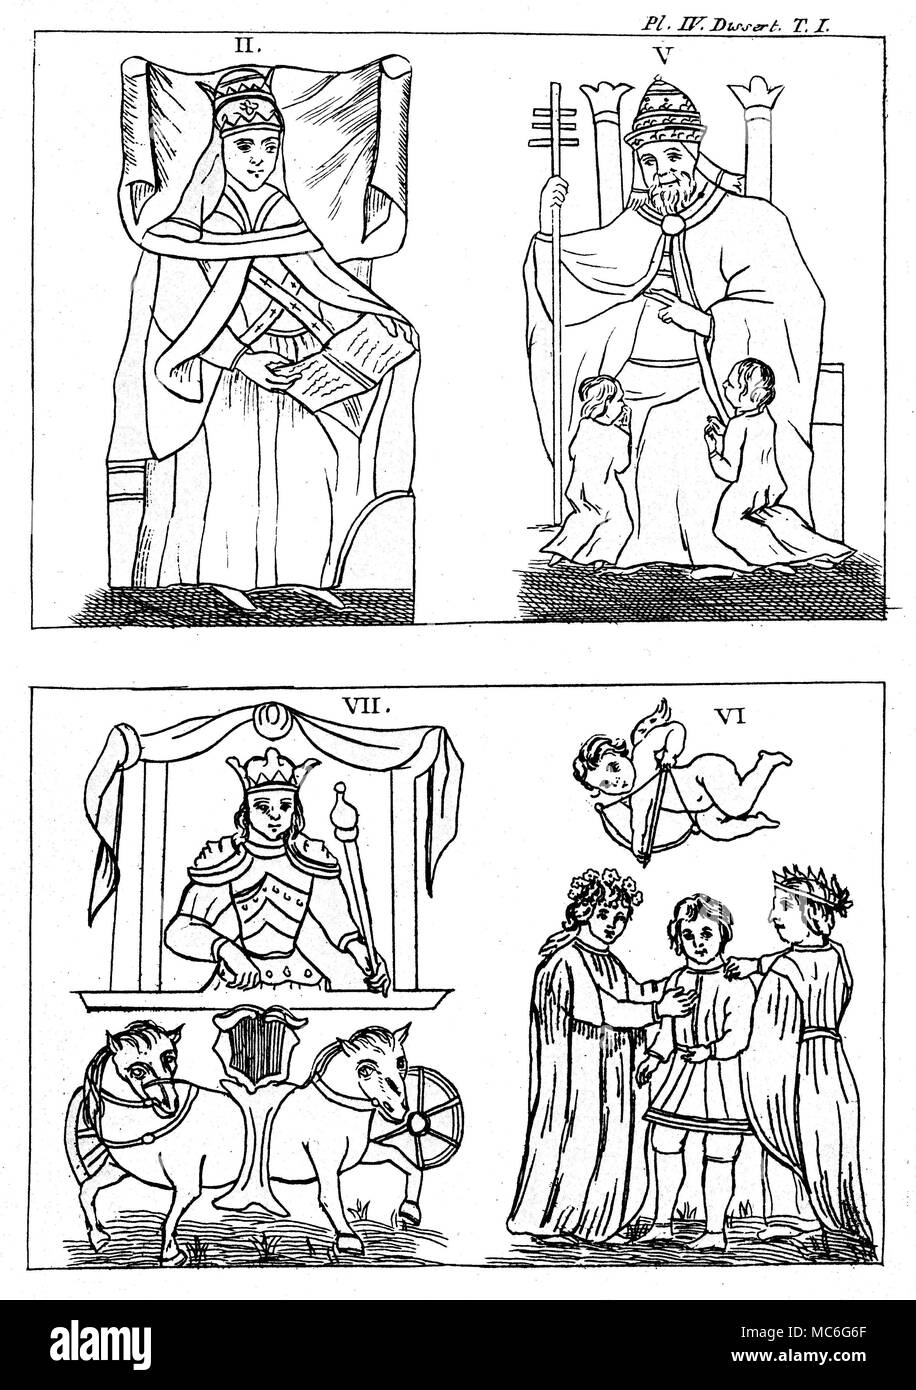 Tarocchi - DESIGN GEBELIN - LADY PAPA - IL PAPA - Carro - amanti [Top left] La Papessa, scheda 2 del set foto dal francese Mason, Court de Gebelin, nel 1773, basata sui ponti di Marsiglia aveva visto. Gebelin cui lei come 'La Sacerdotessa'. Vedere Court de Gebelin, Le Monde primitiva, Voll III [1773] E VIII [1781]. [In alto a destra] Il papa, scheda 5 del Gebelin design, che egli ha indicato come il Chief Semina-pietra o Sommo Sacerdote. [Basso a sinistra] Il carro, scheda 7 del Gebelin design, che egli ha indicato come "Osiride Trionfante". [Bottom Right] Gli amanti, carta 6 del Direttorio del Gruppo Foto Stock